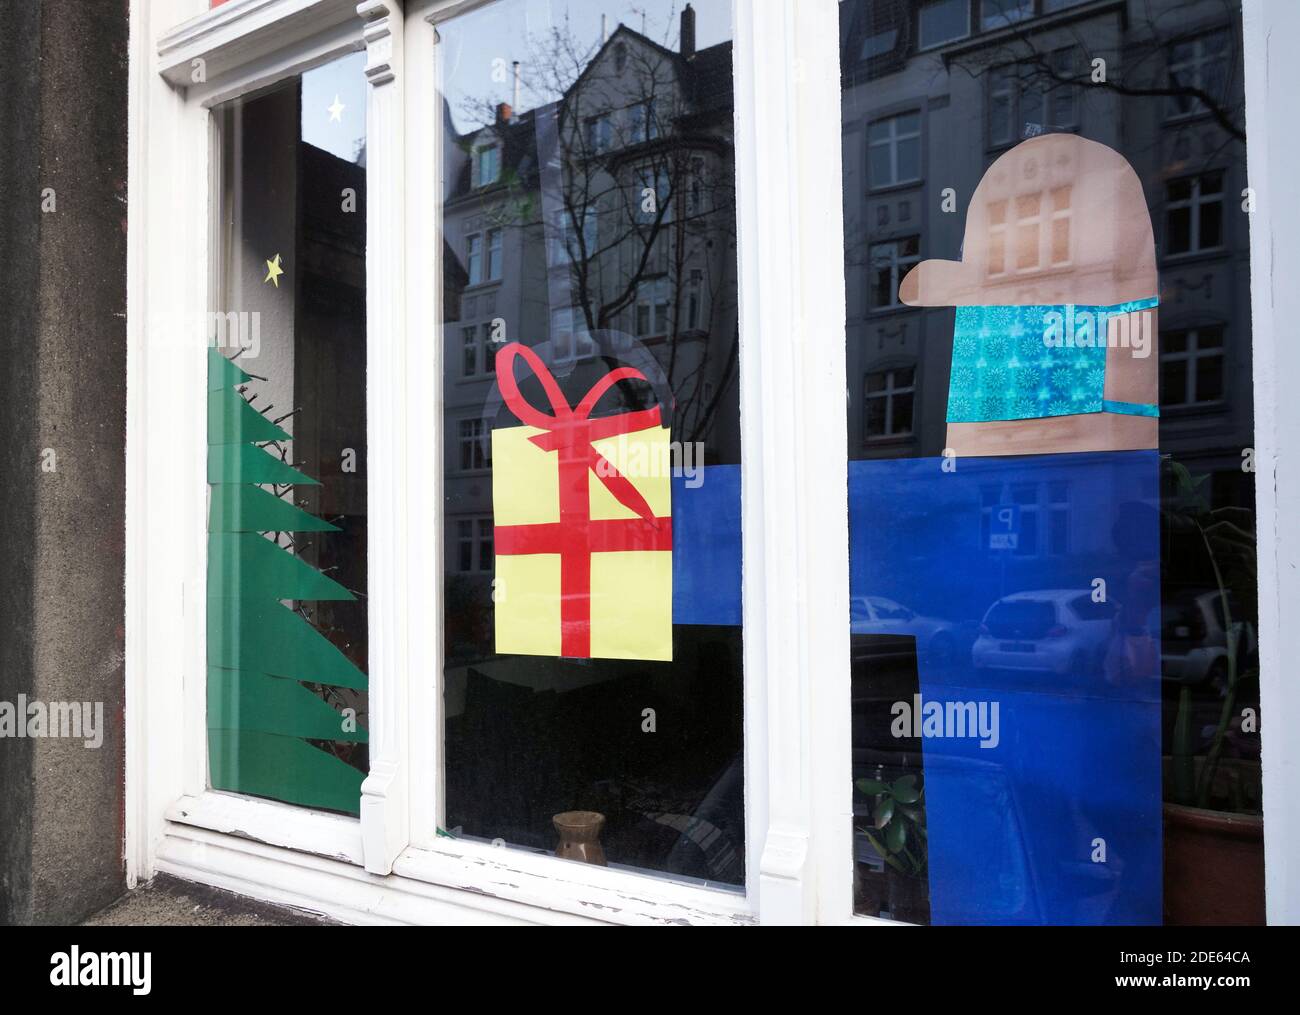 Dortmund, Germania, 29 novembre 2020: La finestra dell'appartamento decorata per Natale si riferisce alla vigilia di Natale a Corona Times. L'uomo che dà il regalo indossa la protezione della bocca e del naso contro il virus. Foto Stock